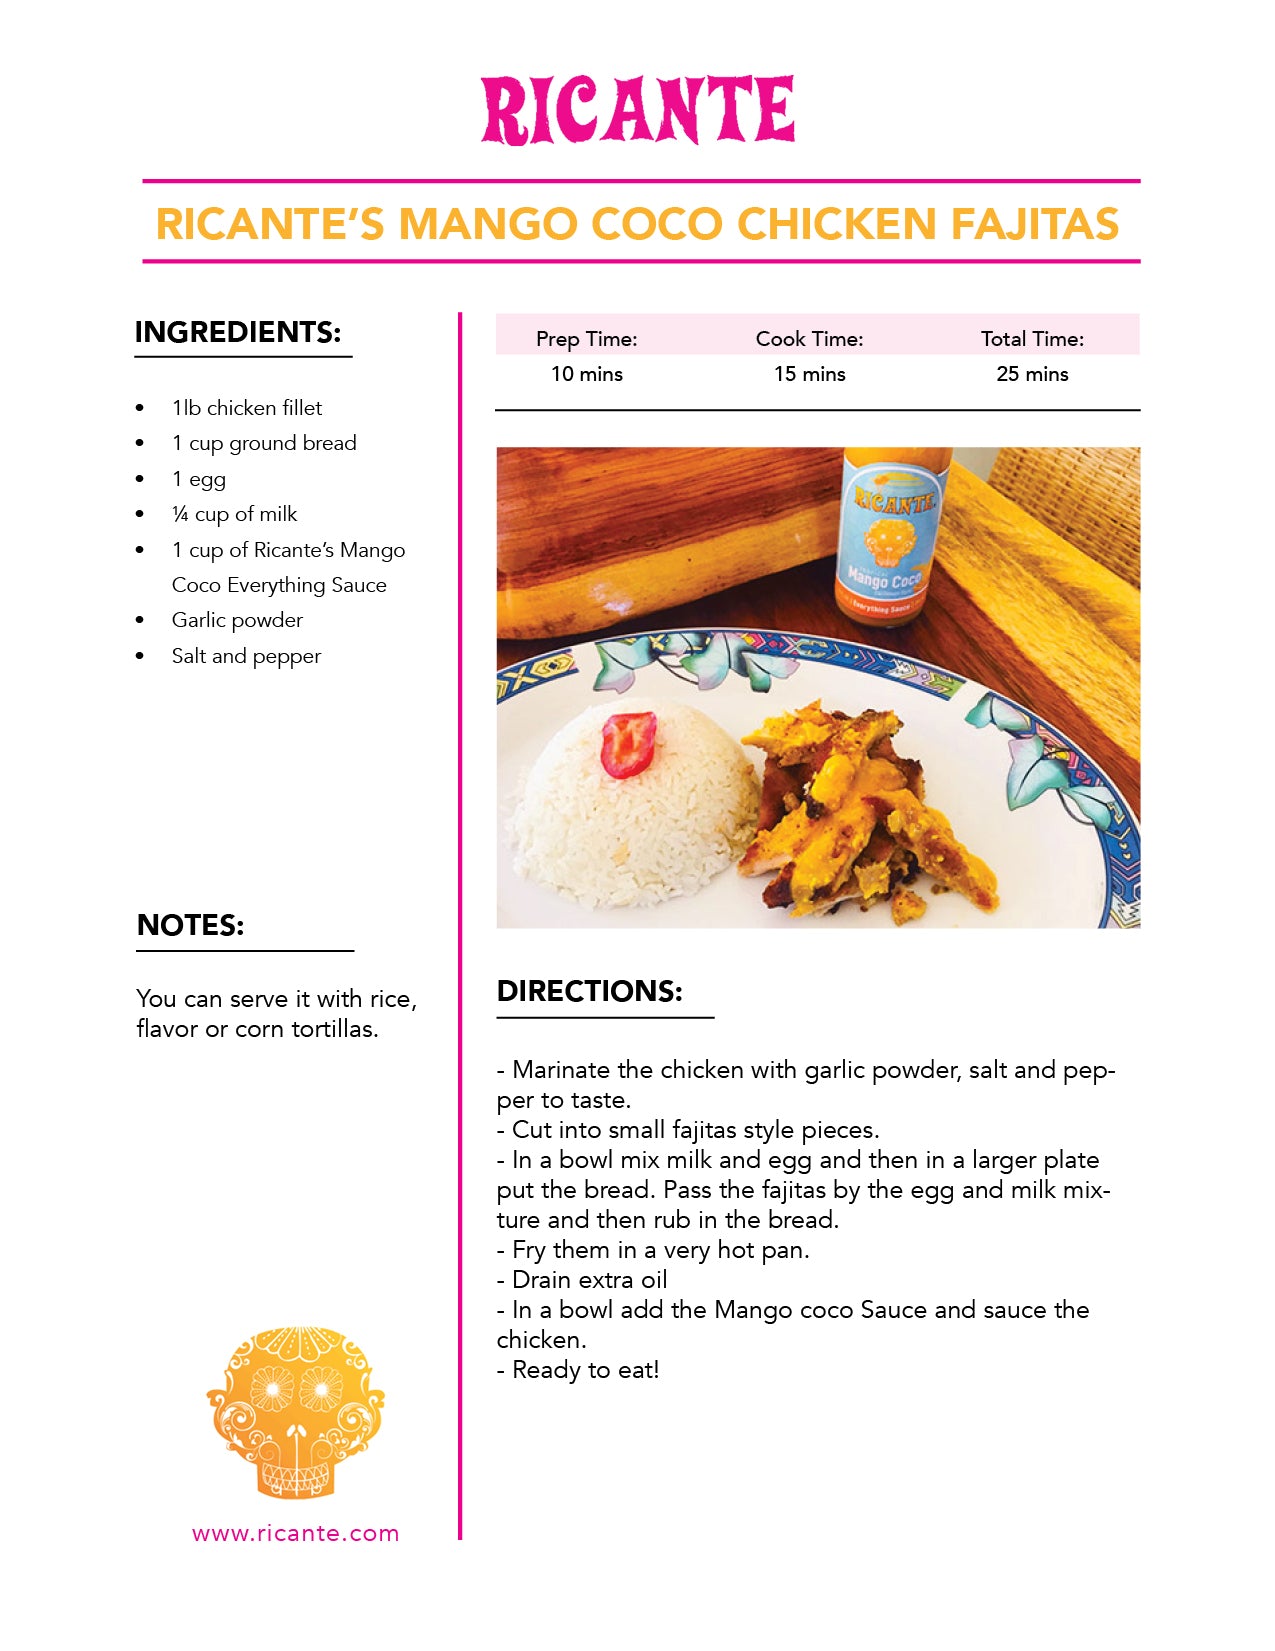 Mango Coco Chicken Fajitas